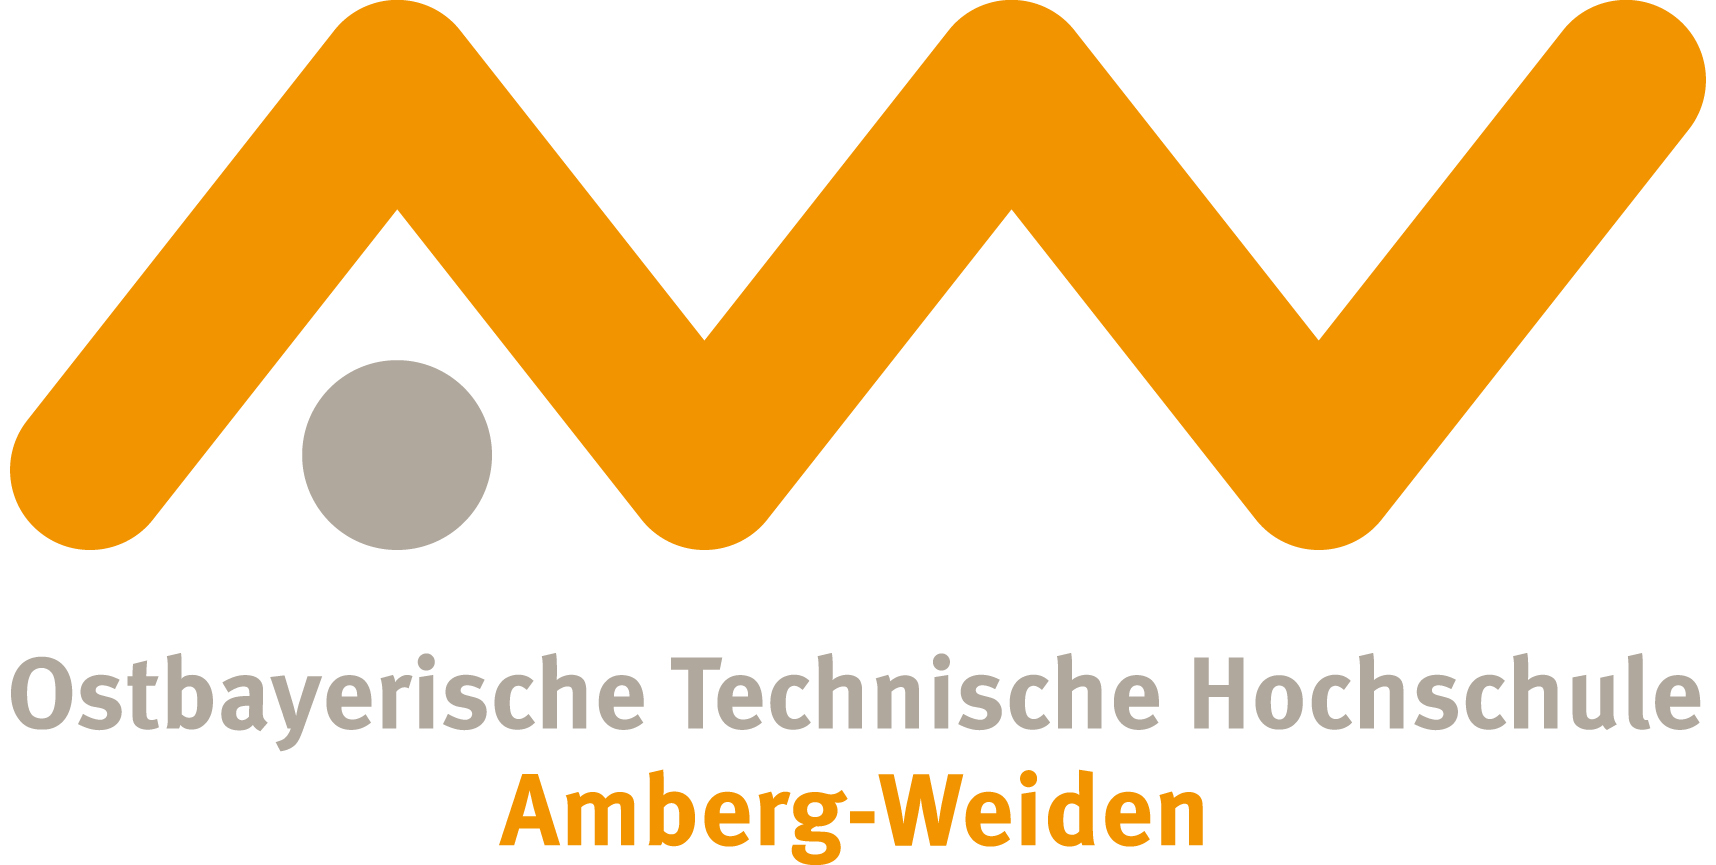 Die Ostbayrische Technische Hochschule Amberg- Weiden stellt sich vor